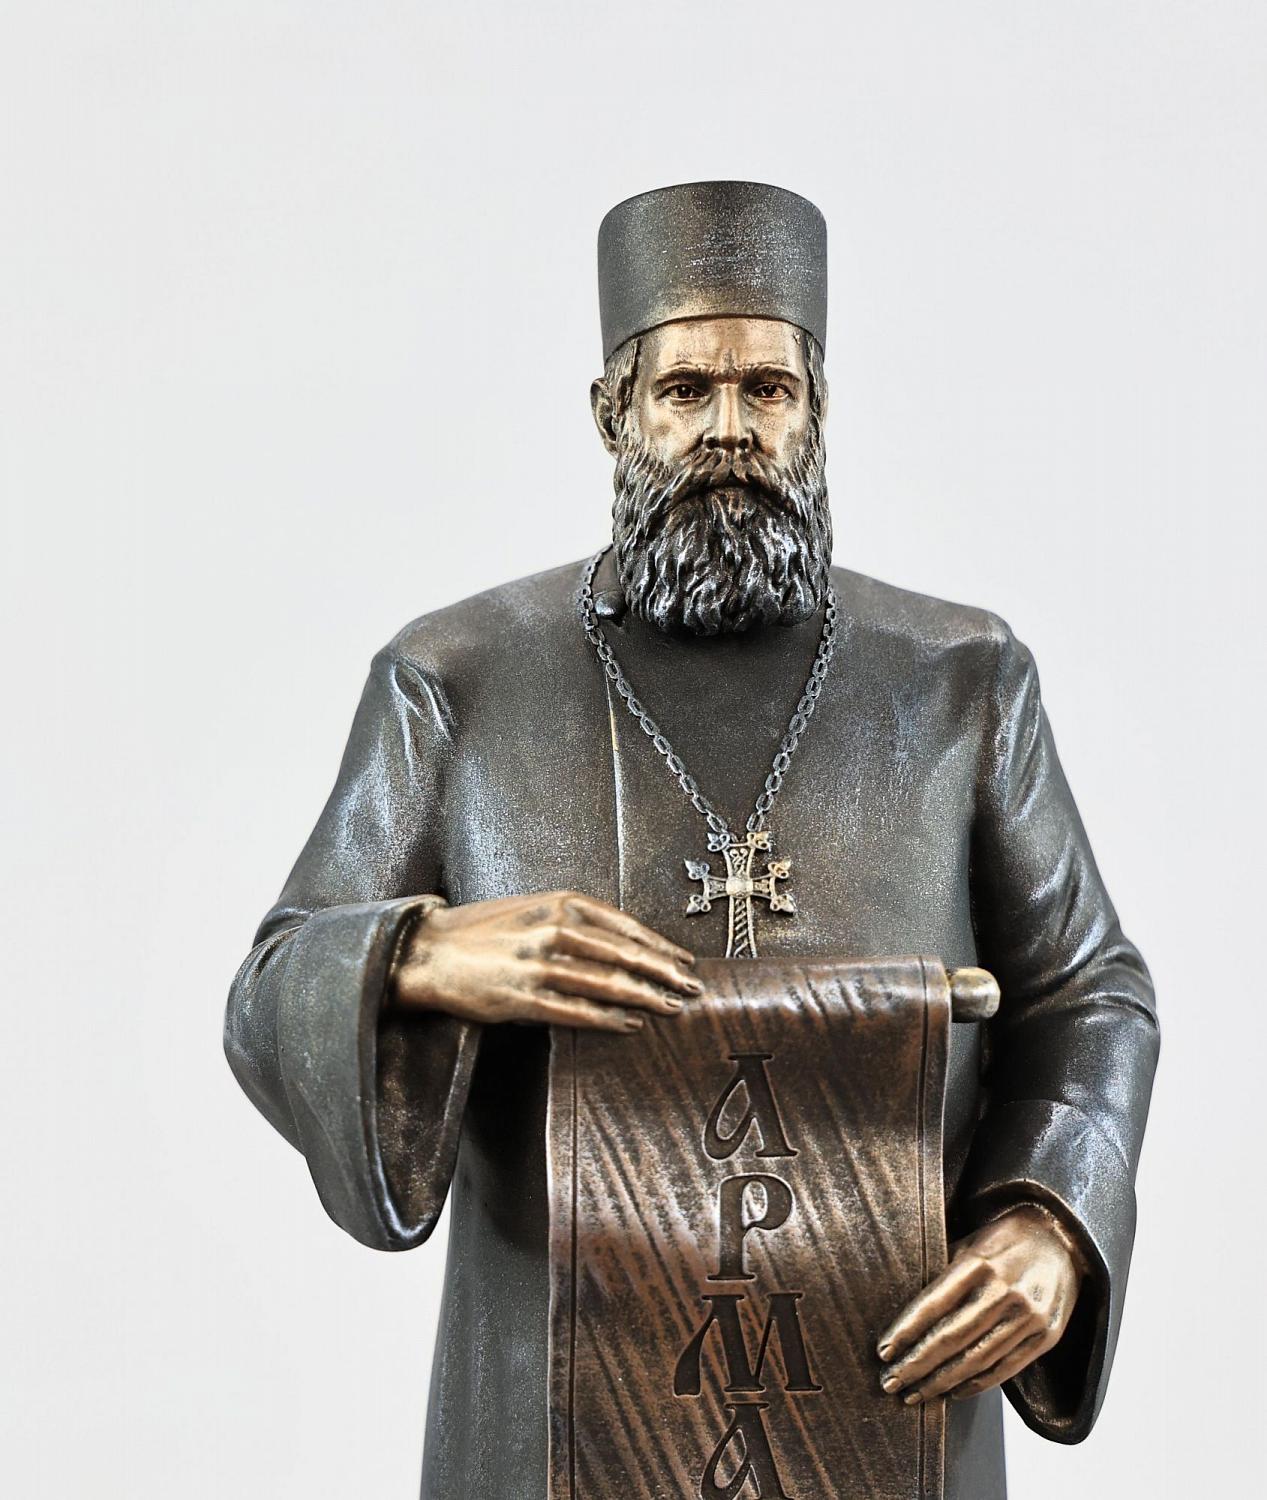 Статуэтка Петрос Патканян со свитком (цвет Вернисаж)